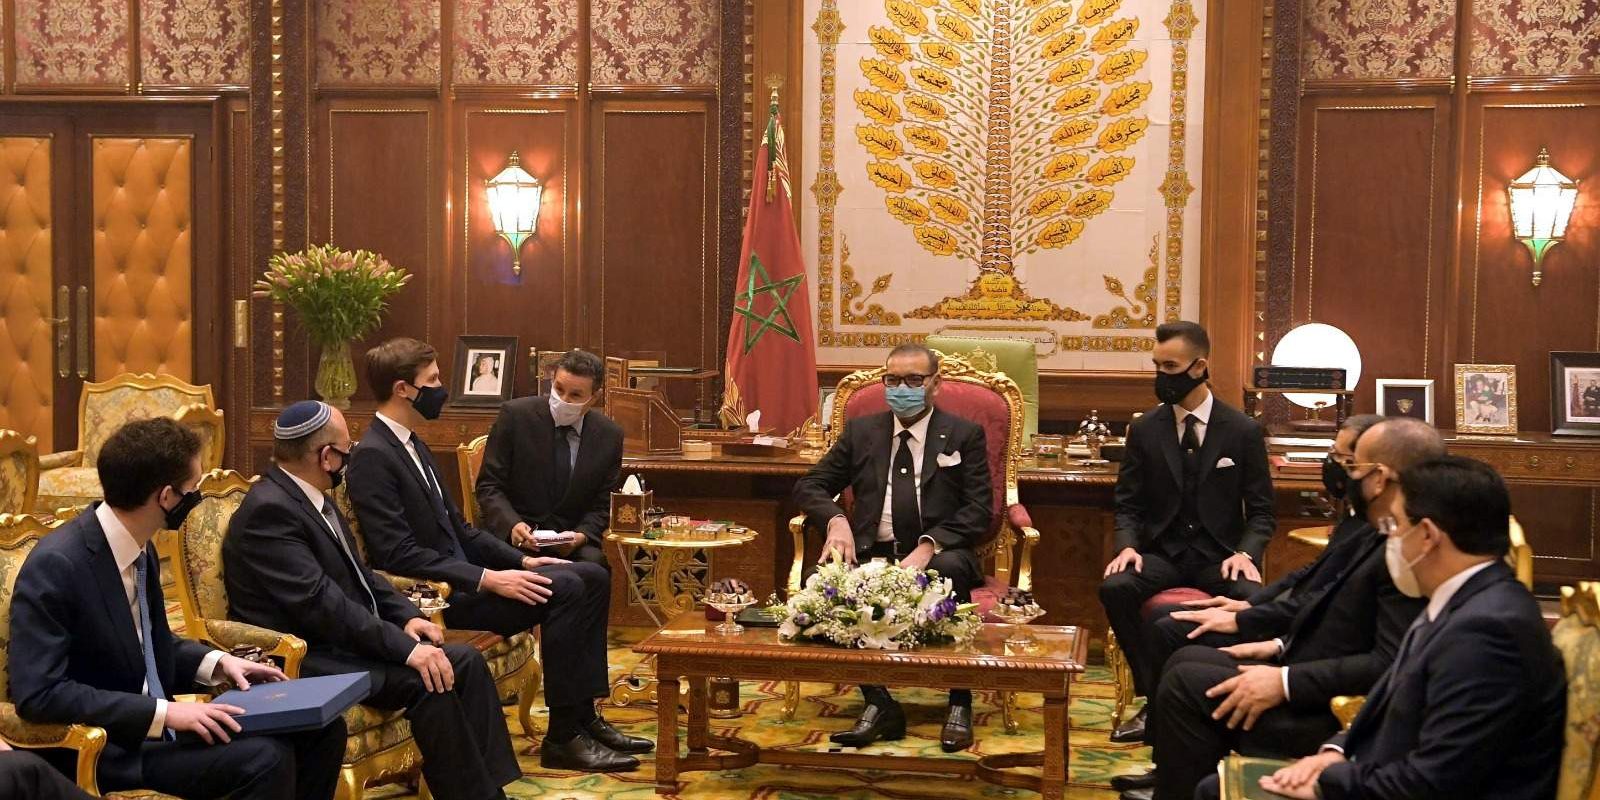 Le roi Mohammed VI a reçu Jared Kushner et Meir Ben-Shabbat au Palais royal de Rabat © DR